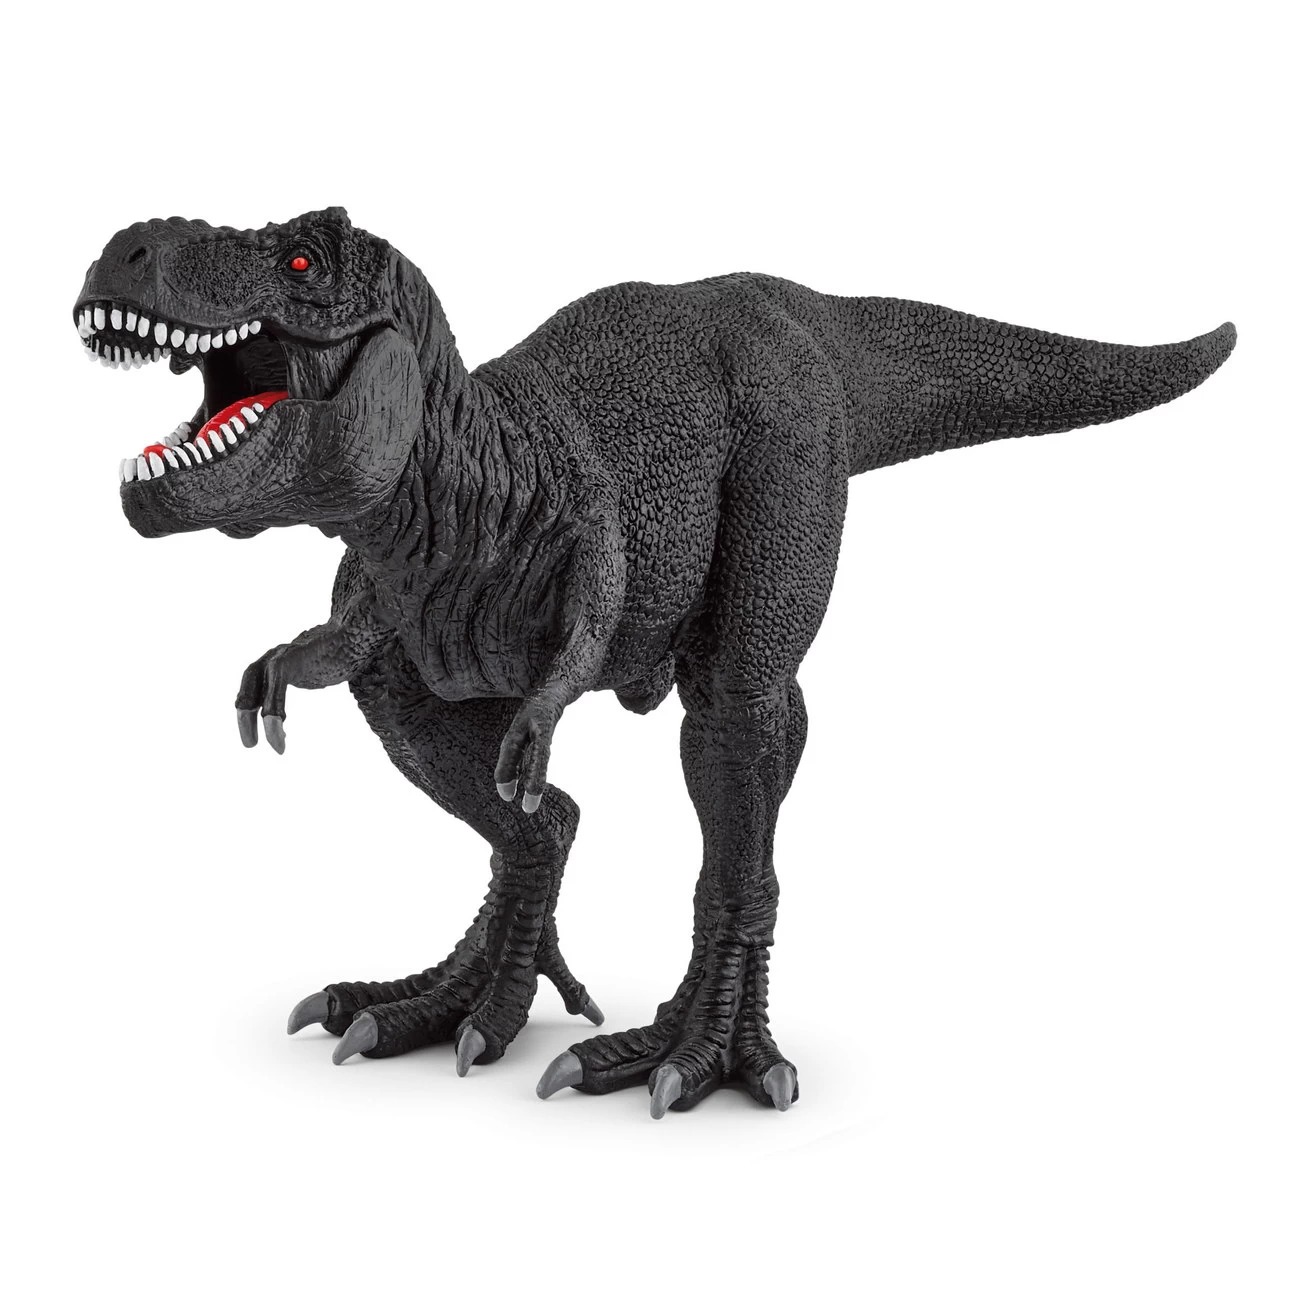 Tyrannosaurus Rex schwarz Sonderedition 2021 - Schleich 72169 Dinosaurier